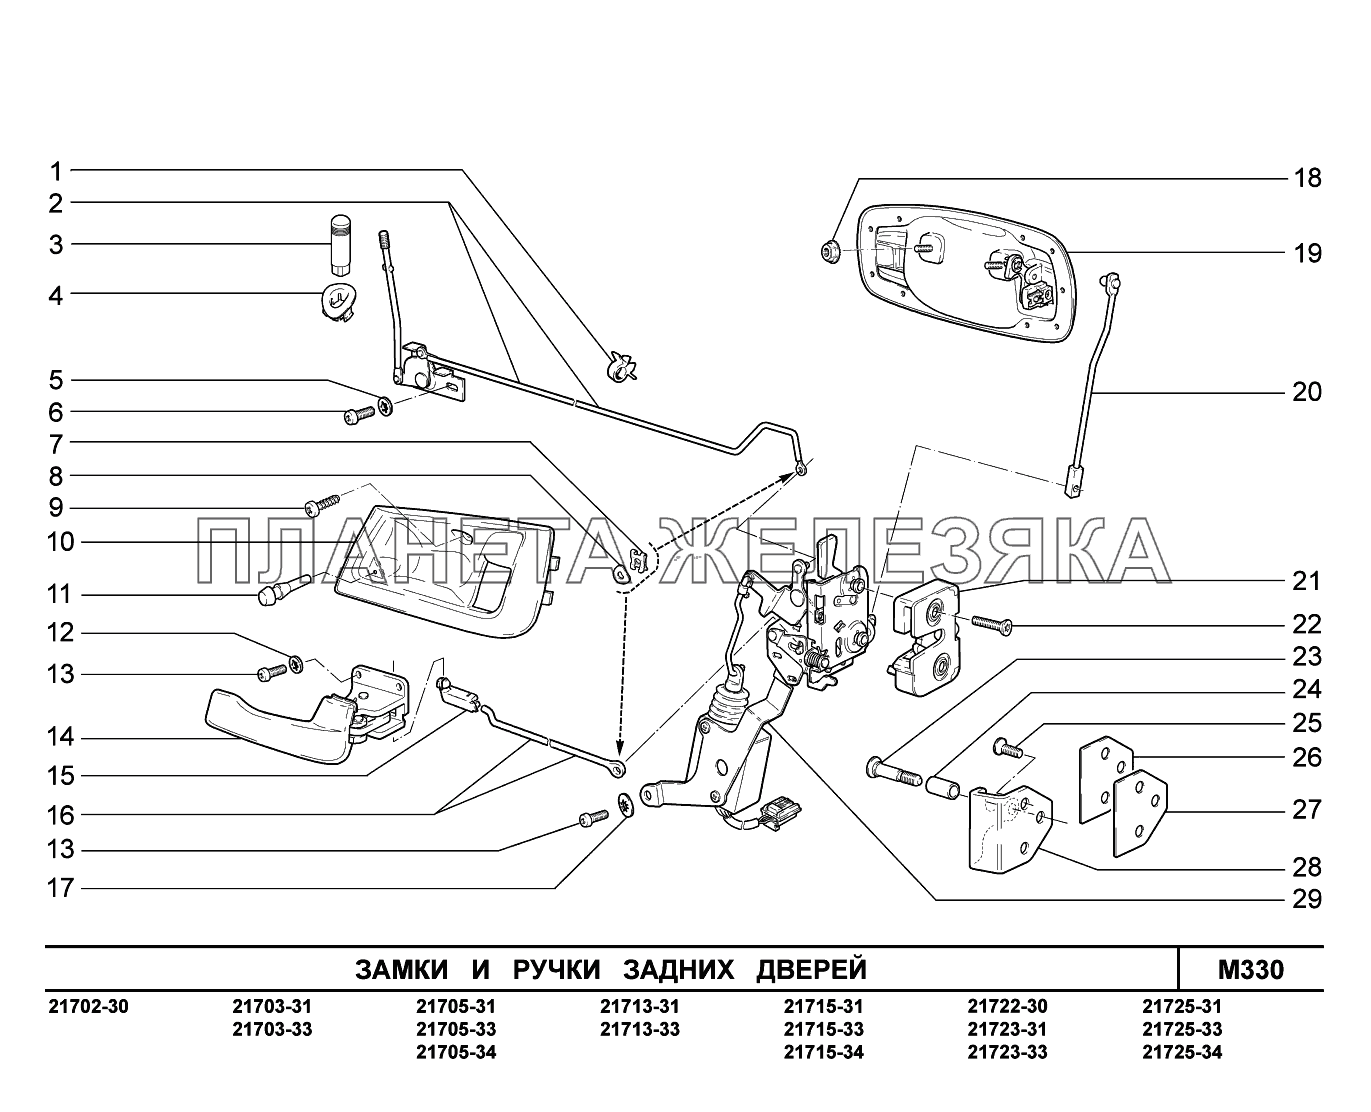 M330. Замки и ручки задних дверей ВАЗ-2170 